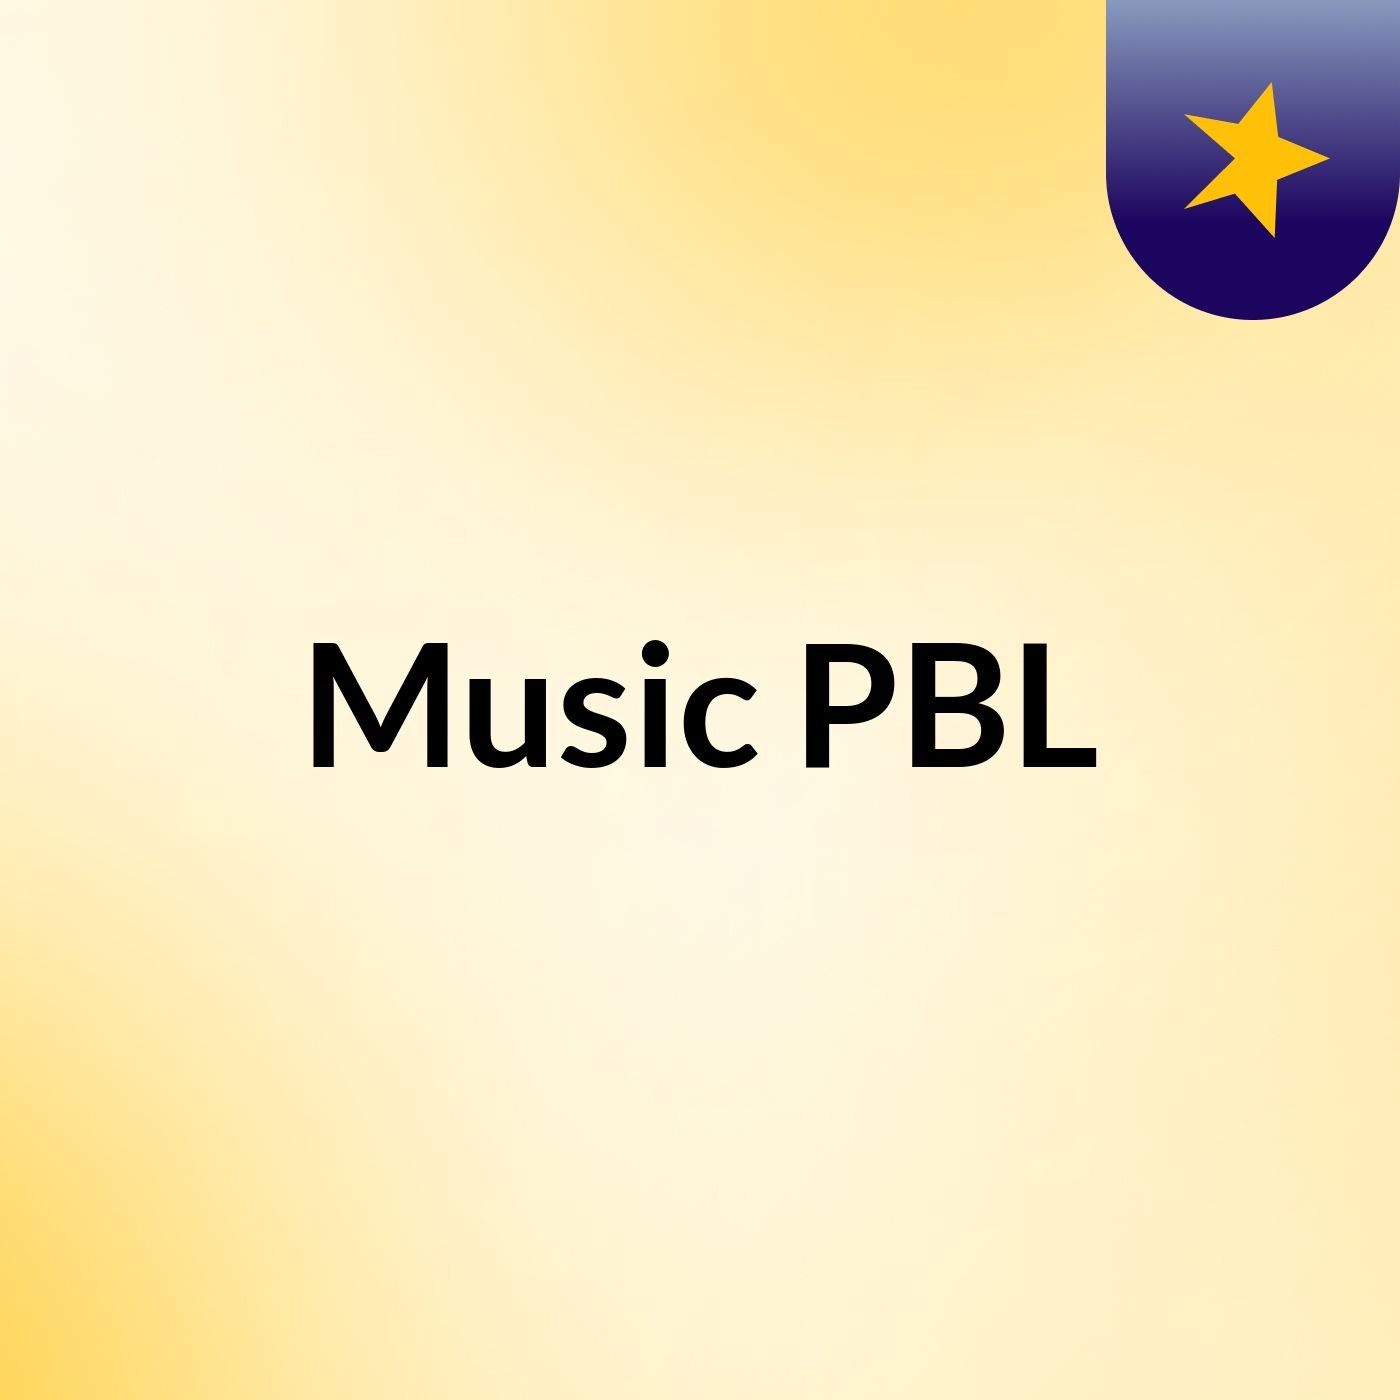 Music PBL